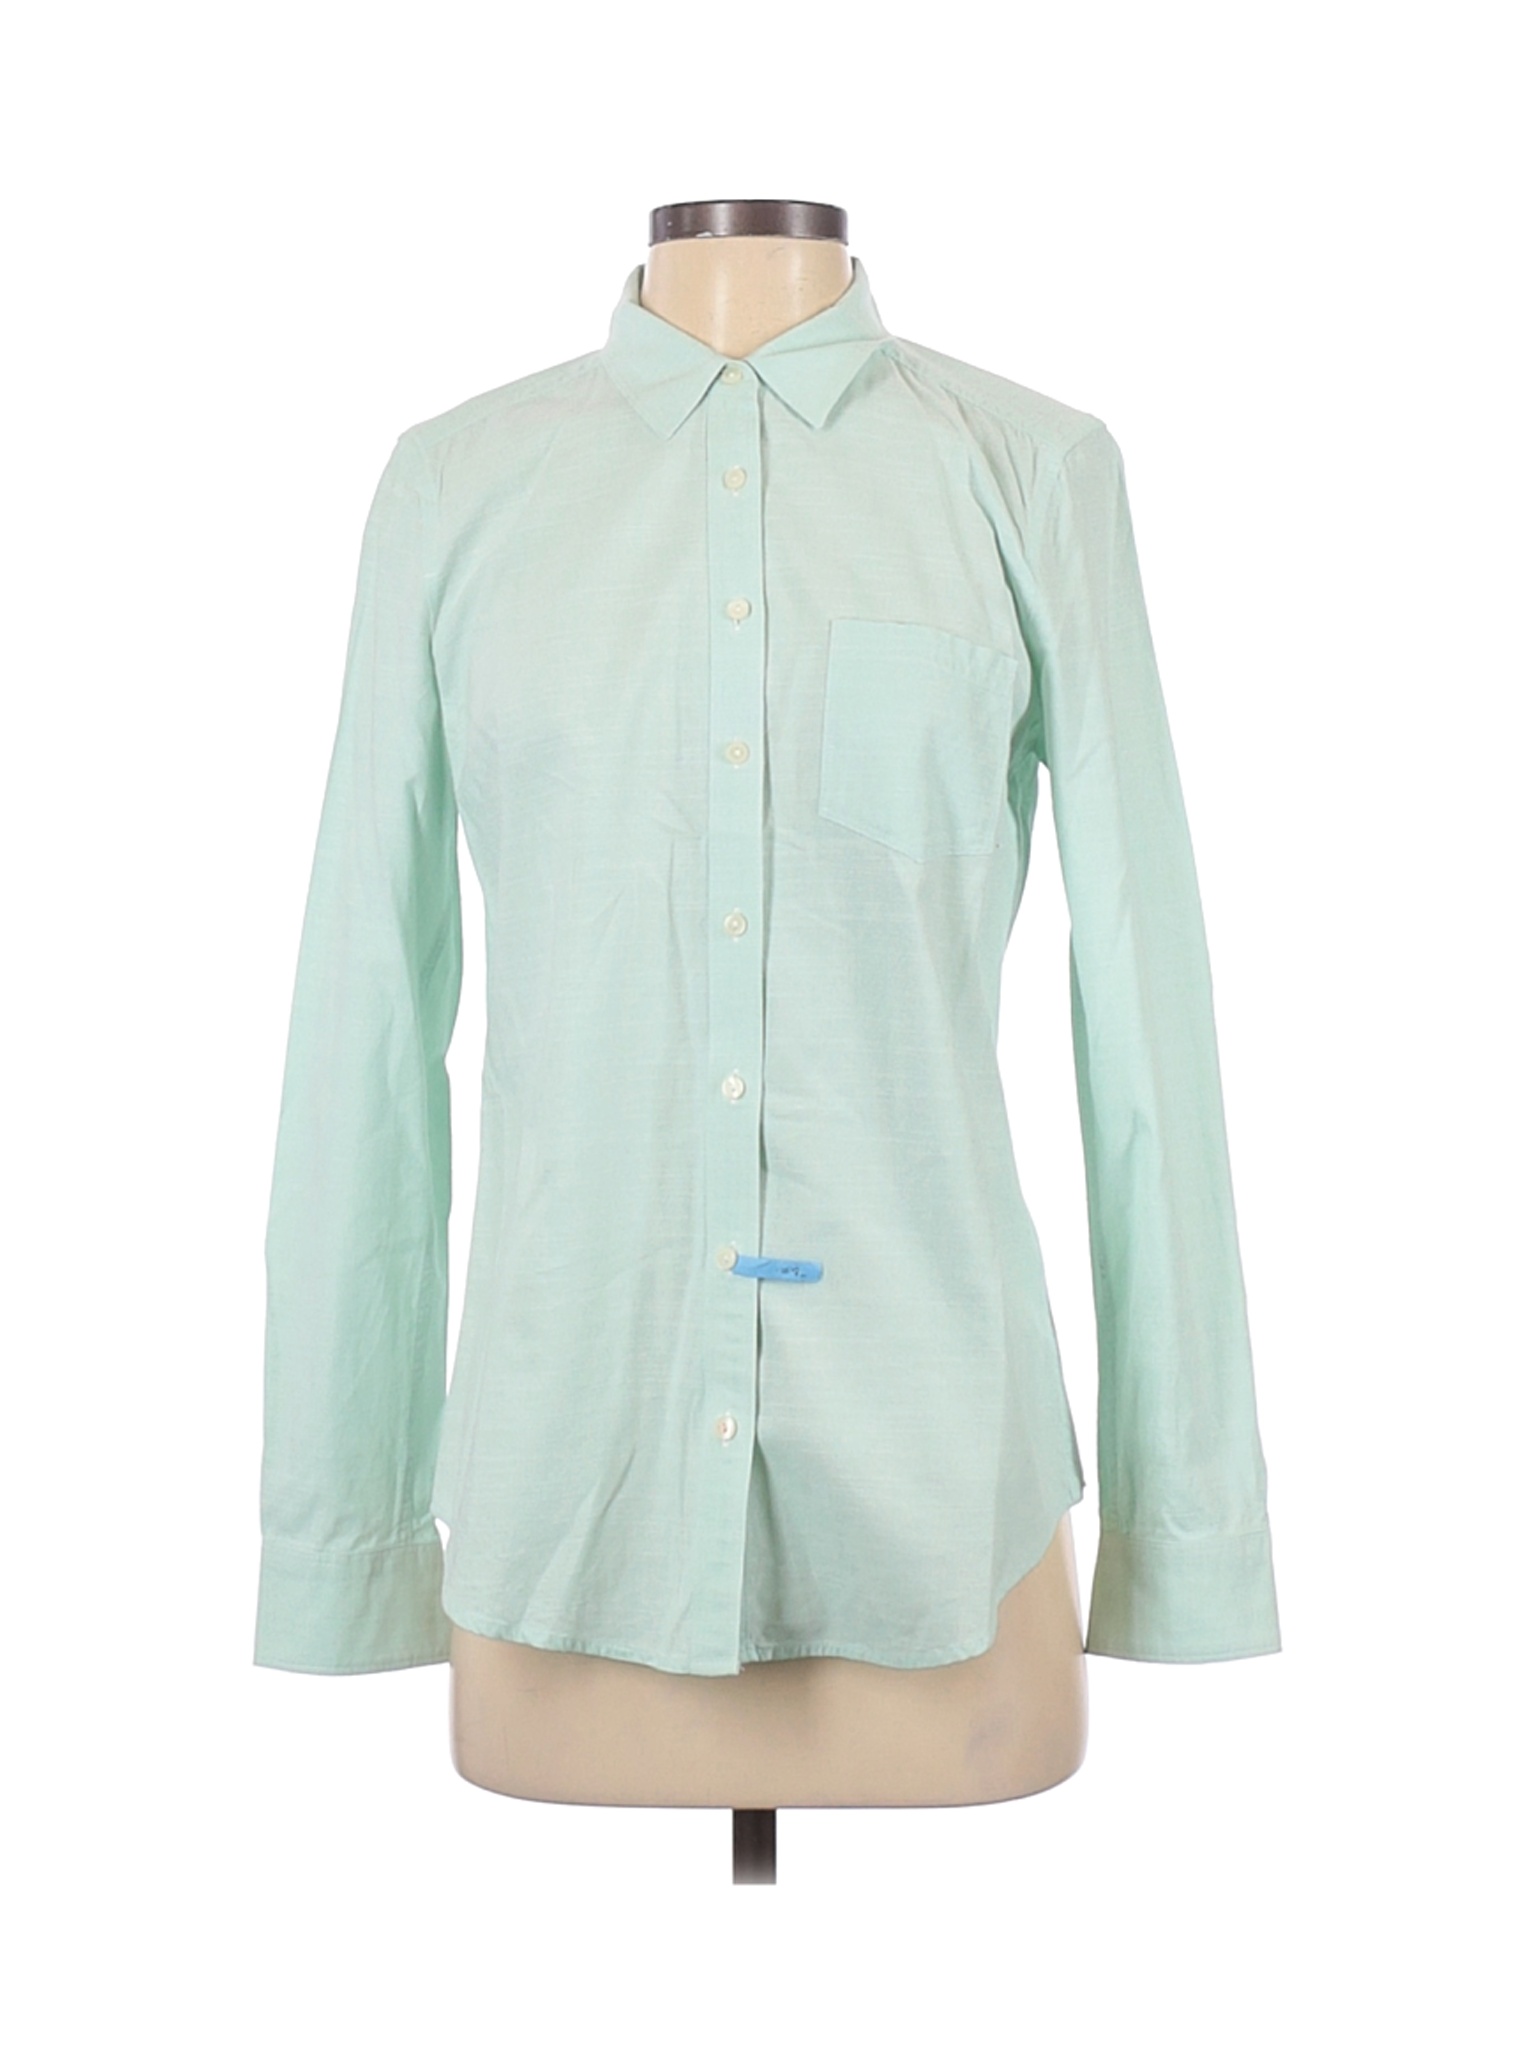 Banana Republic Factory Store Women Green Long Sleeve Button-Down Shirt ...